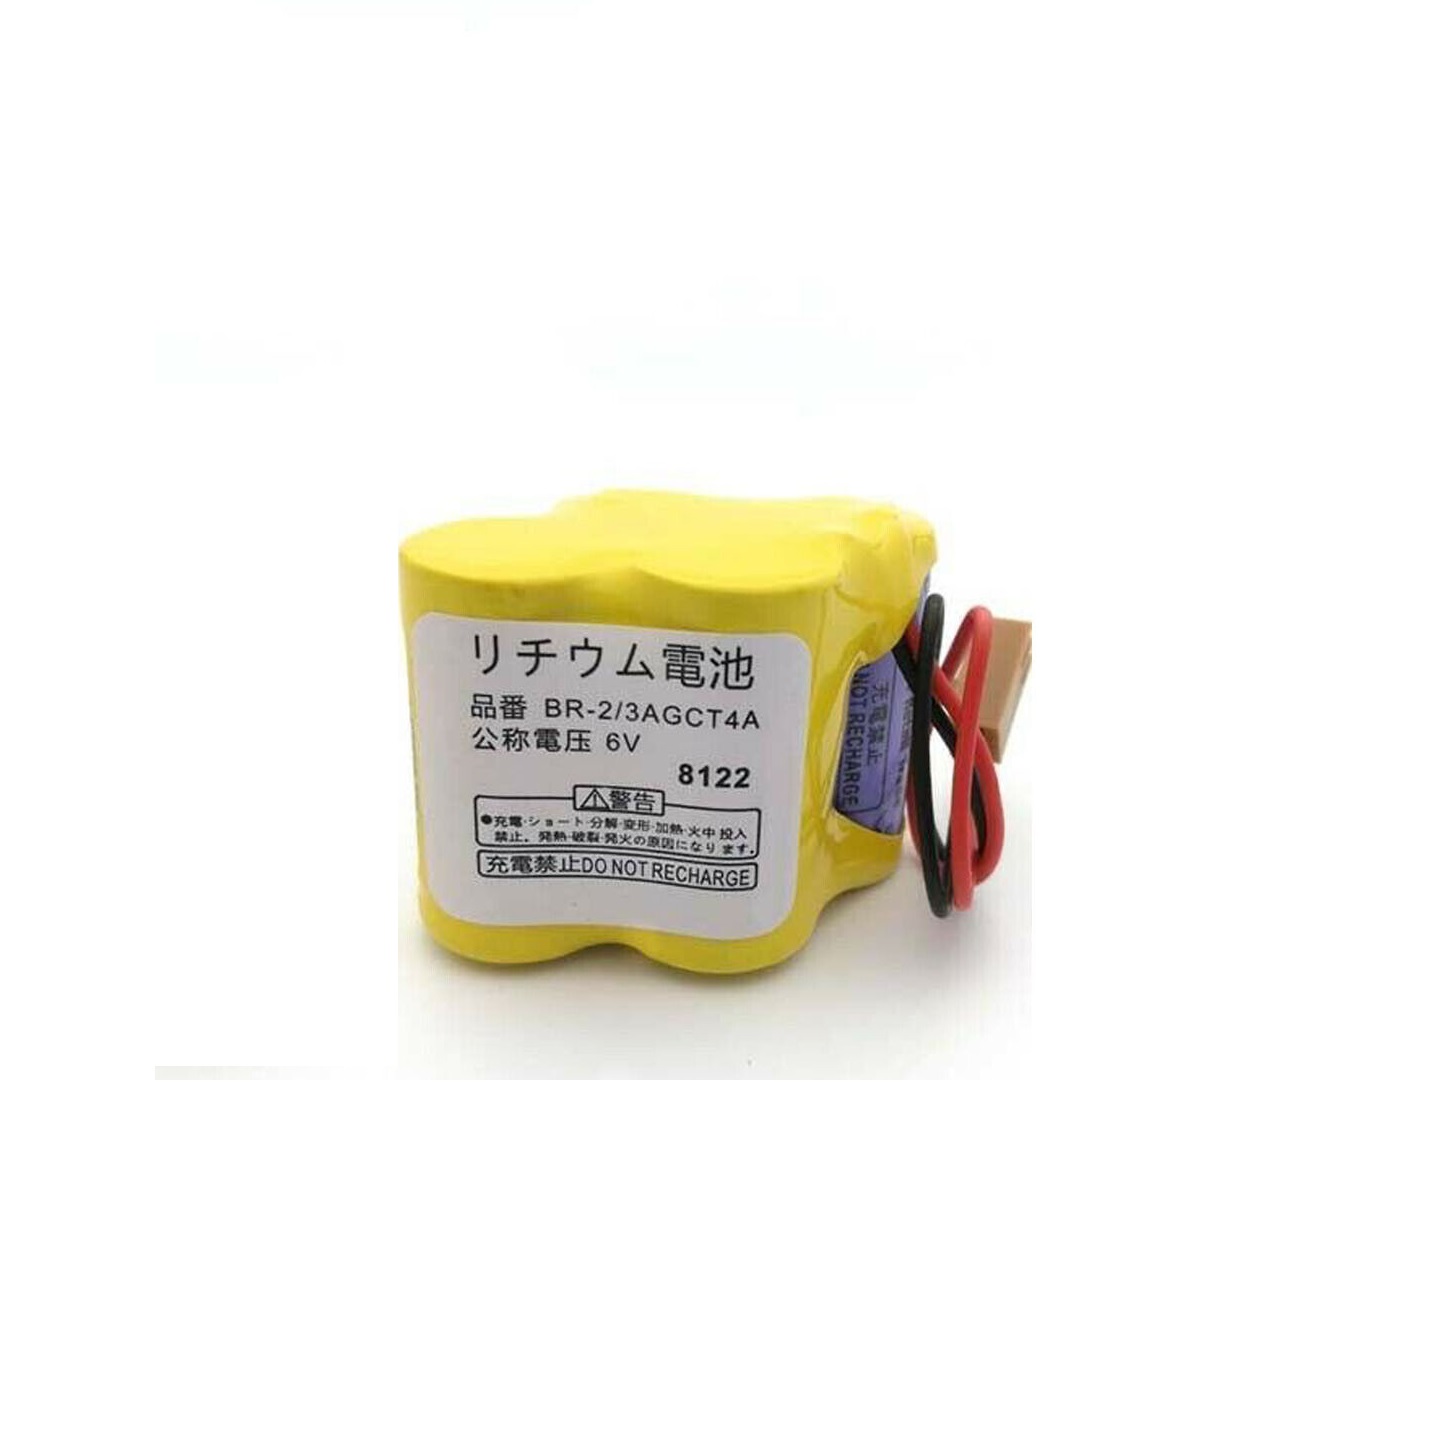 Batterie BR-2/3AGCT4A 6V Panasonic FANUC A98L-0031-0025 (compatible)